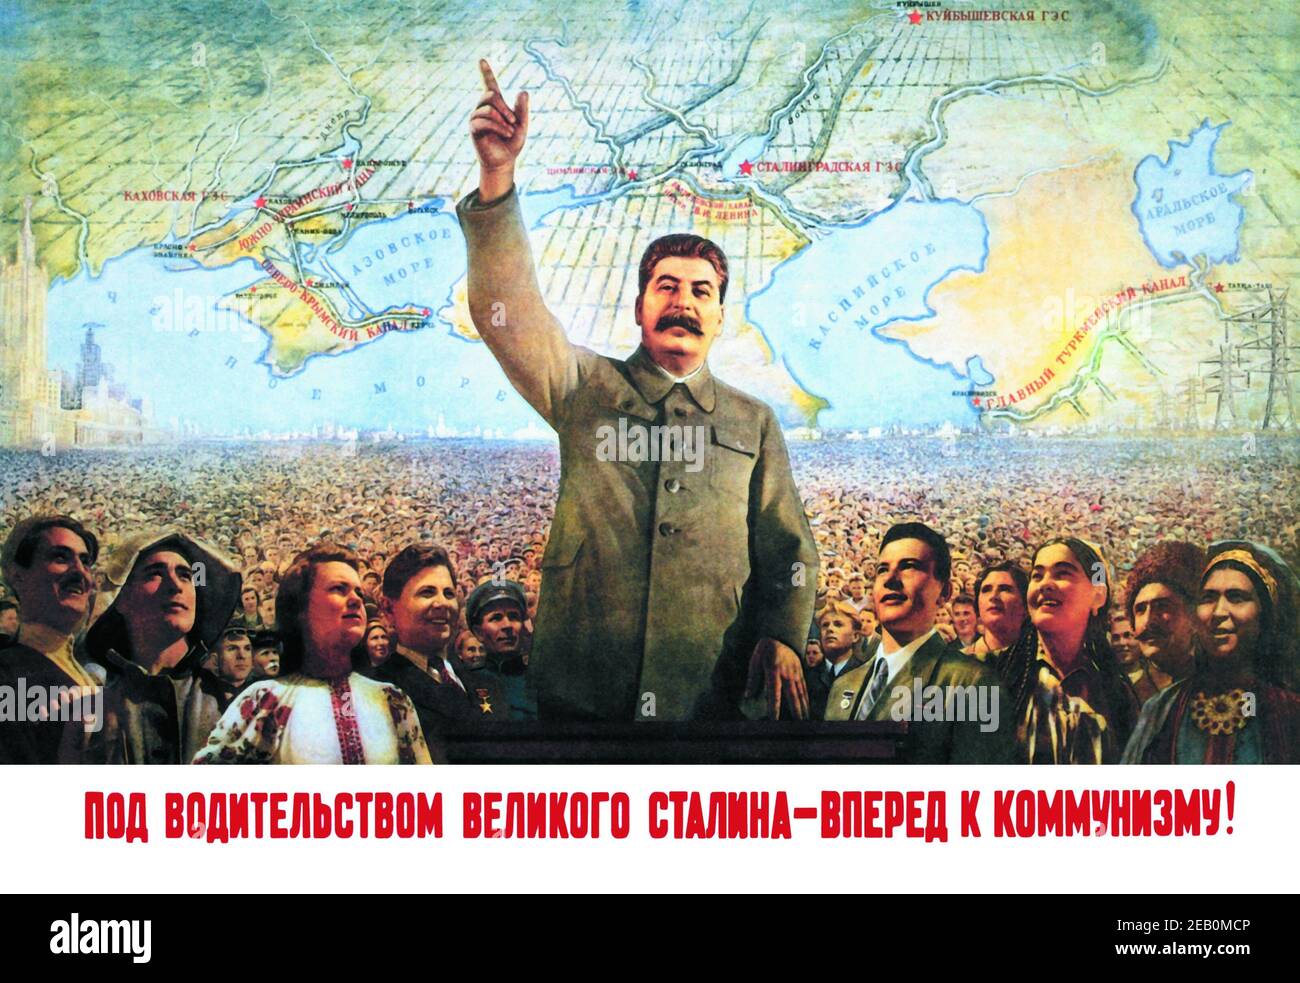 Verständnis der Führung von Stalin - vorlegen mit dem Kommunismus Stockfoto